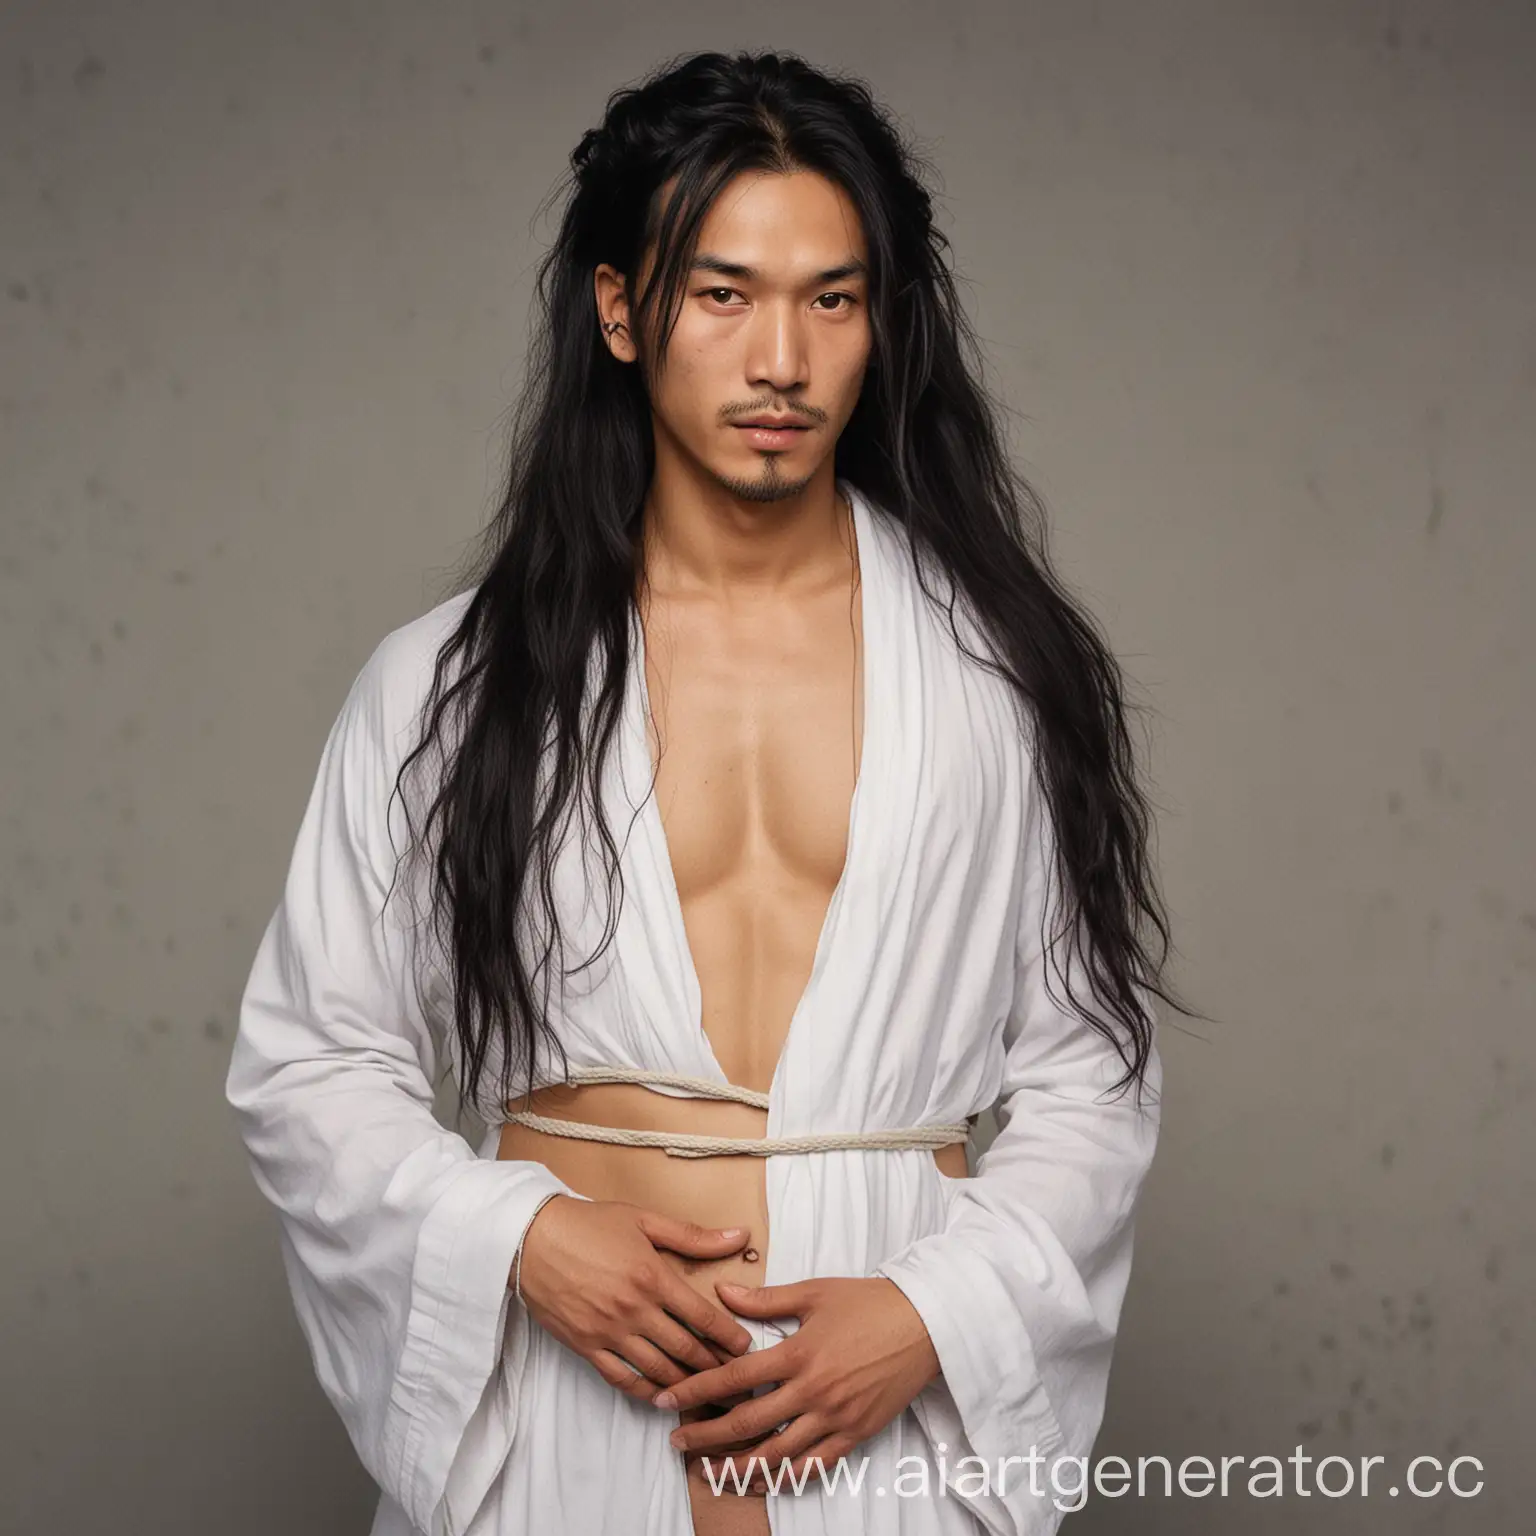 беременный цыган китаец мужчина, похожий на девушку в белом одеянии с бинтами на руках и длинными волосами в хвосте